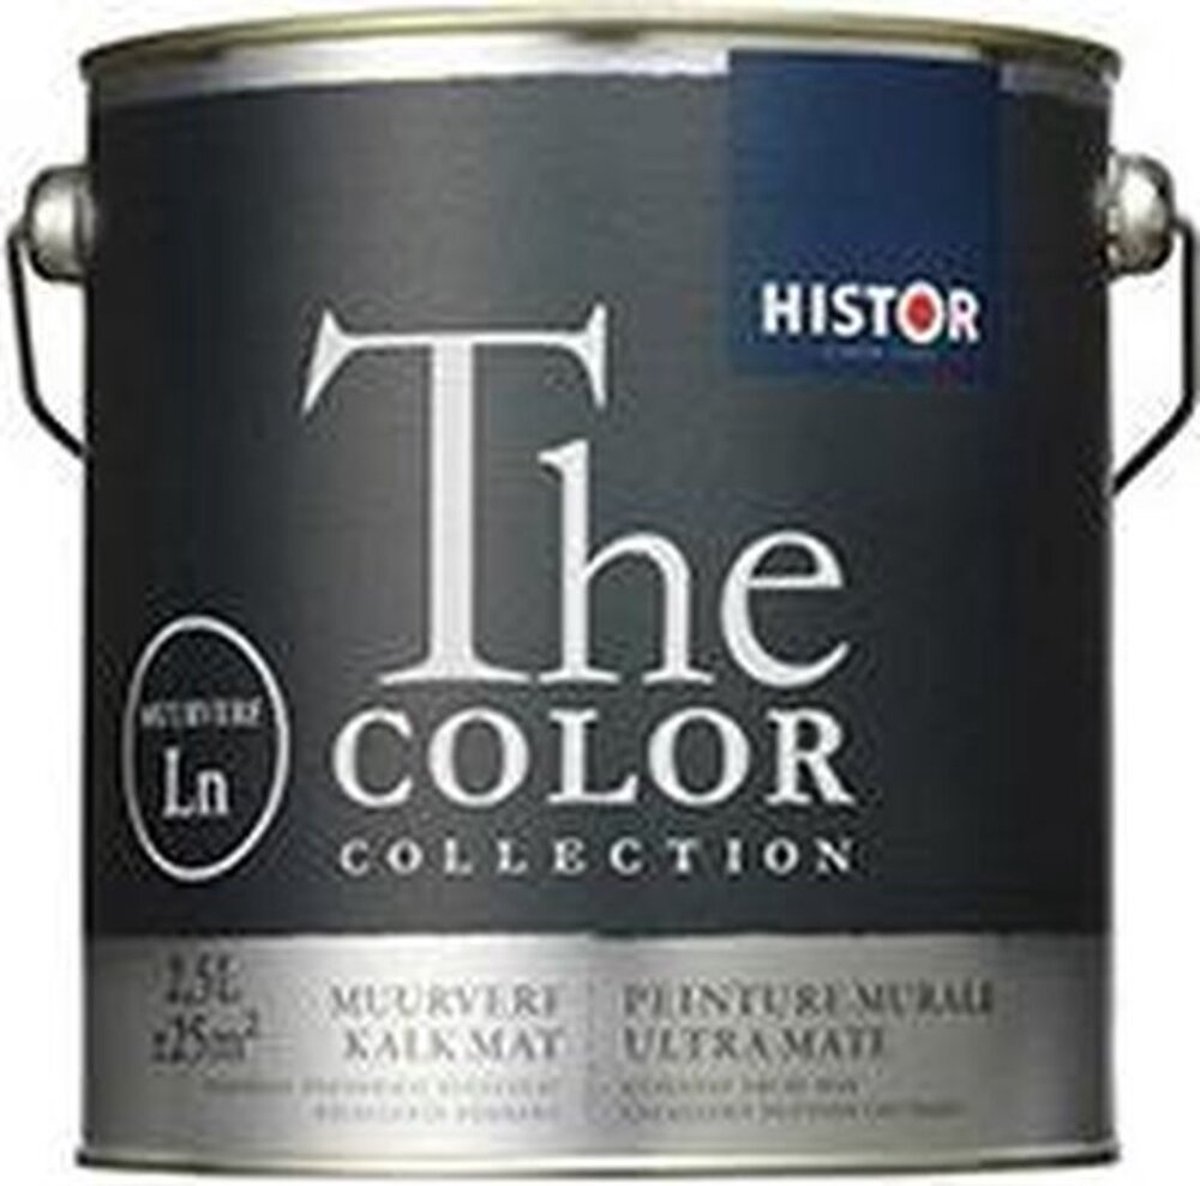 Histor The Color Collection Muurverf Kalkmat - Muurverf - Dekkend - Binnen - Water basis - Kalkmat -